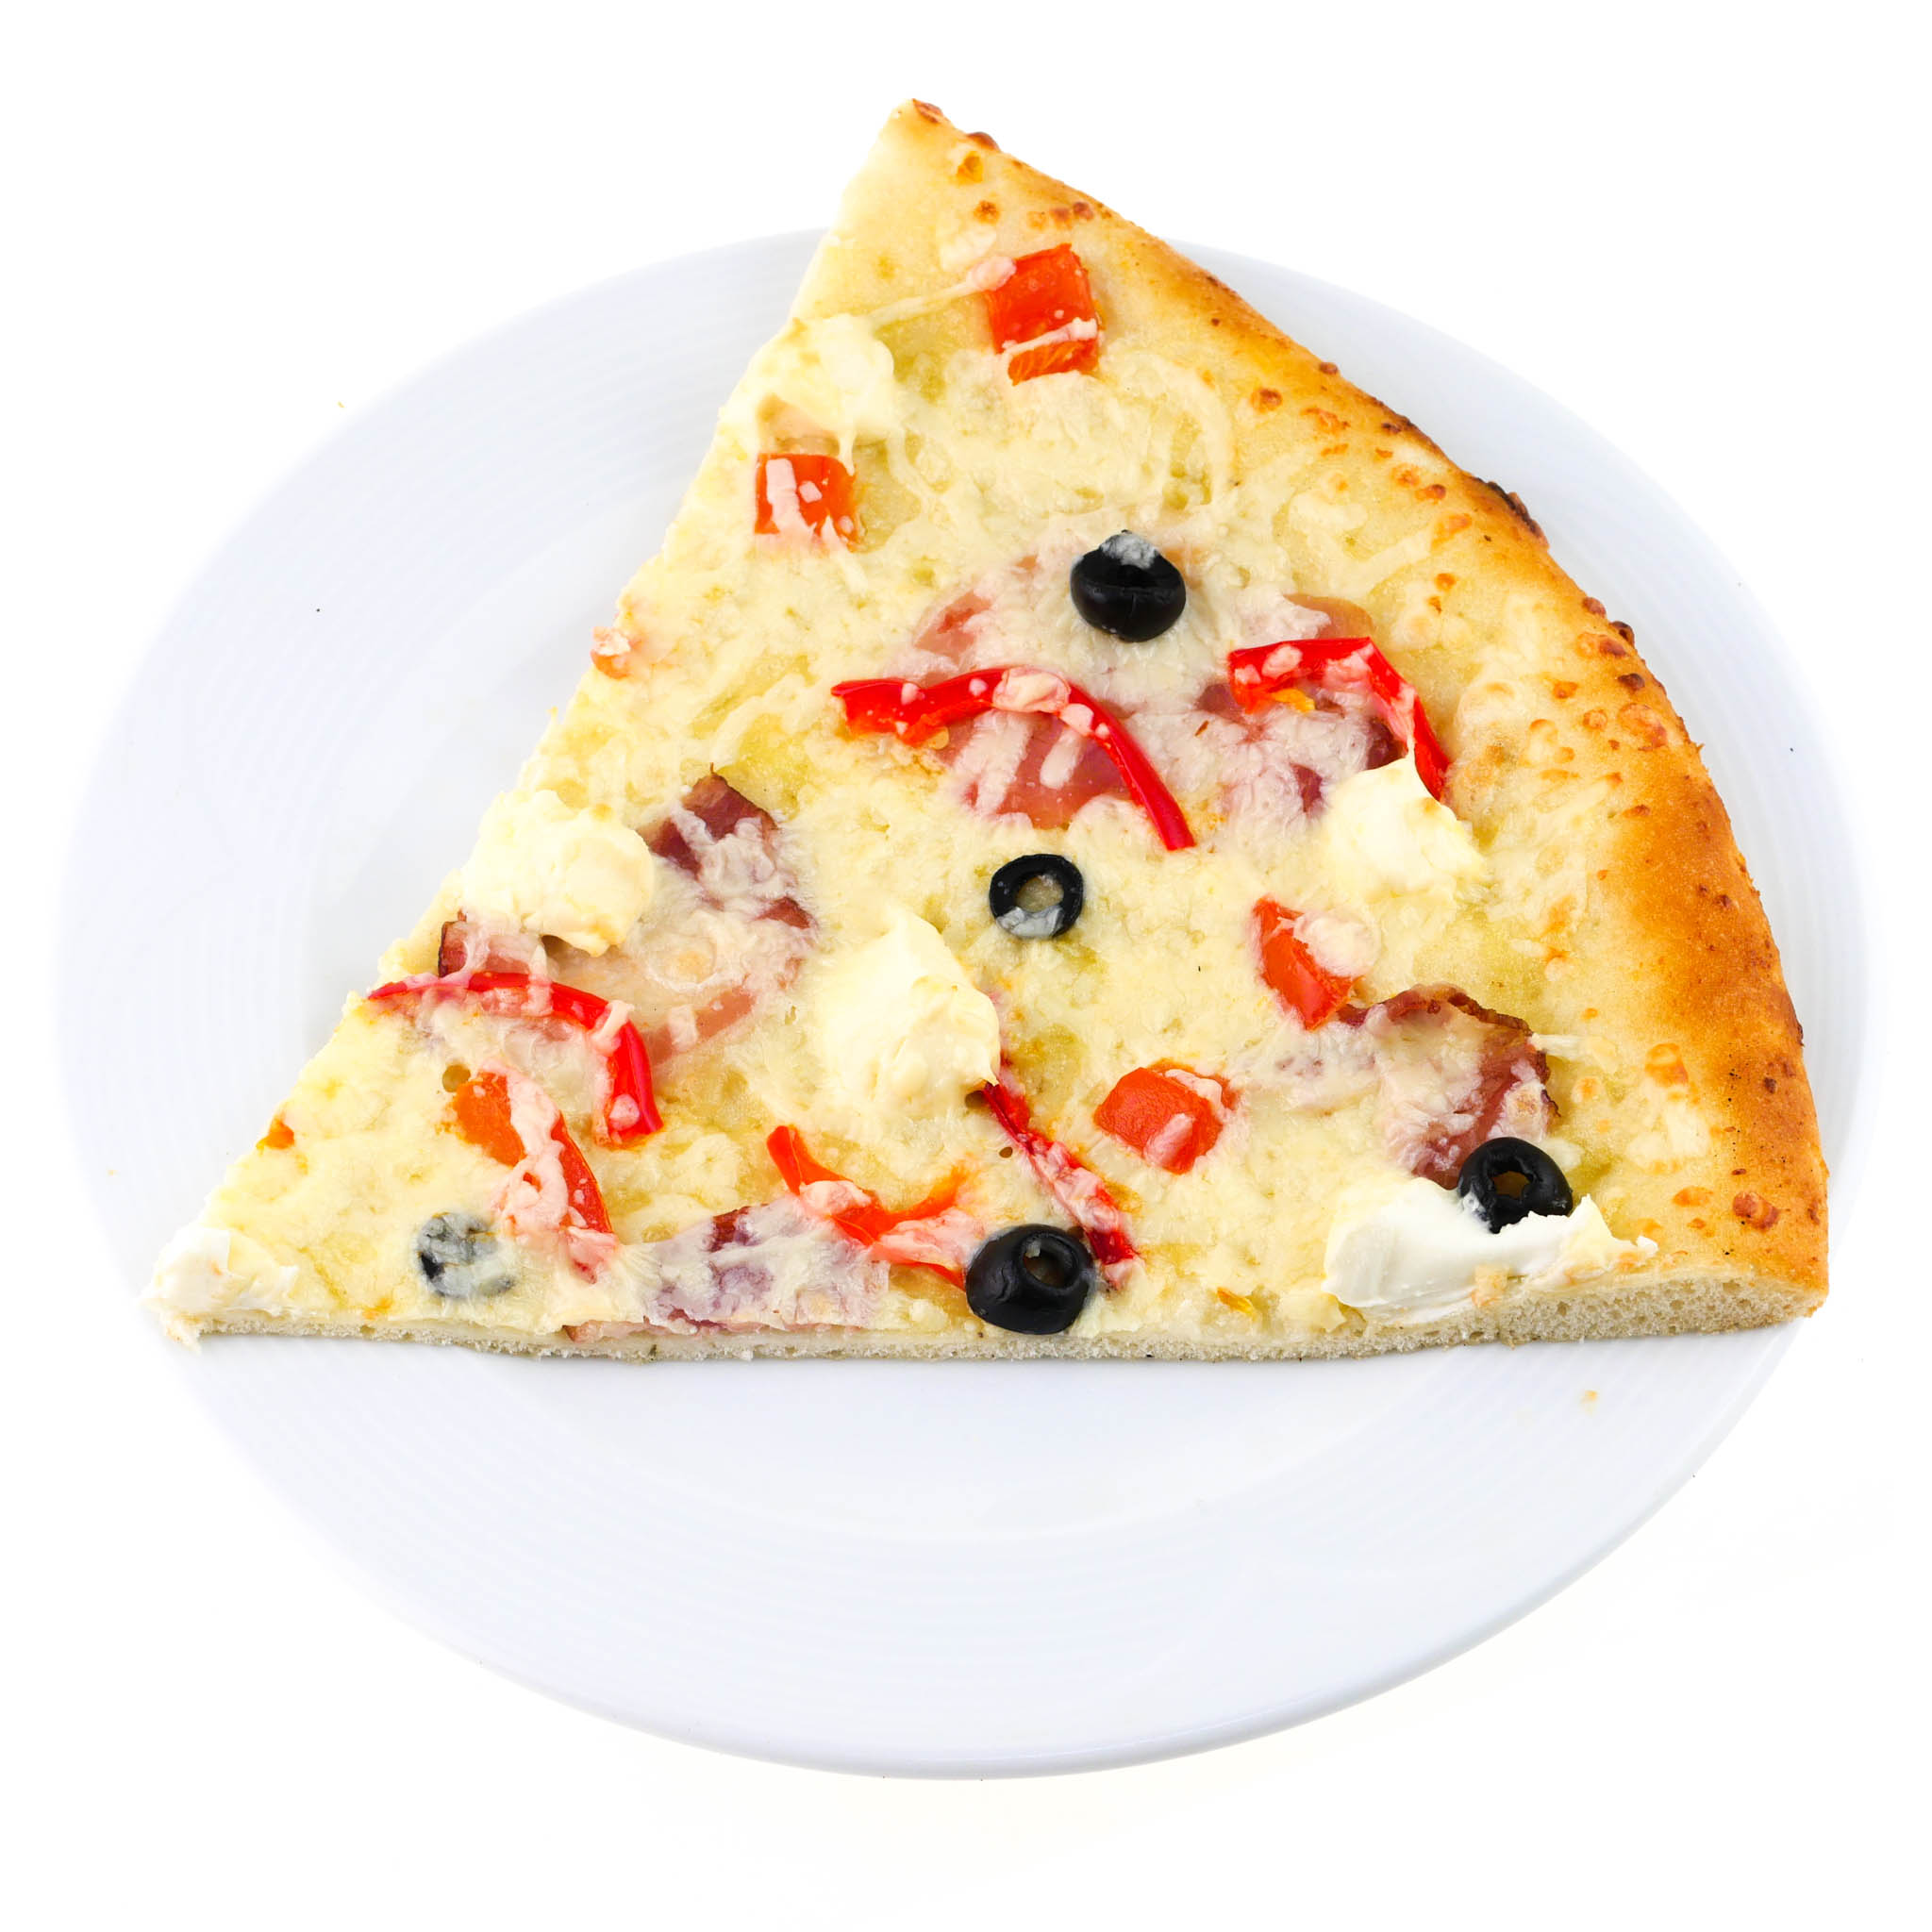 сколько калорий в куске пиццы пепперони додо фото 75